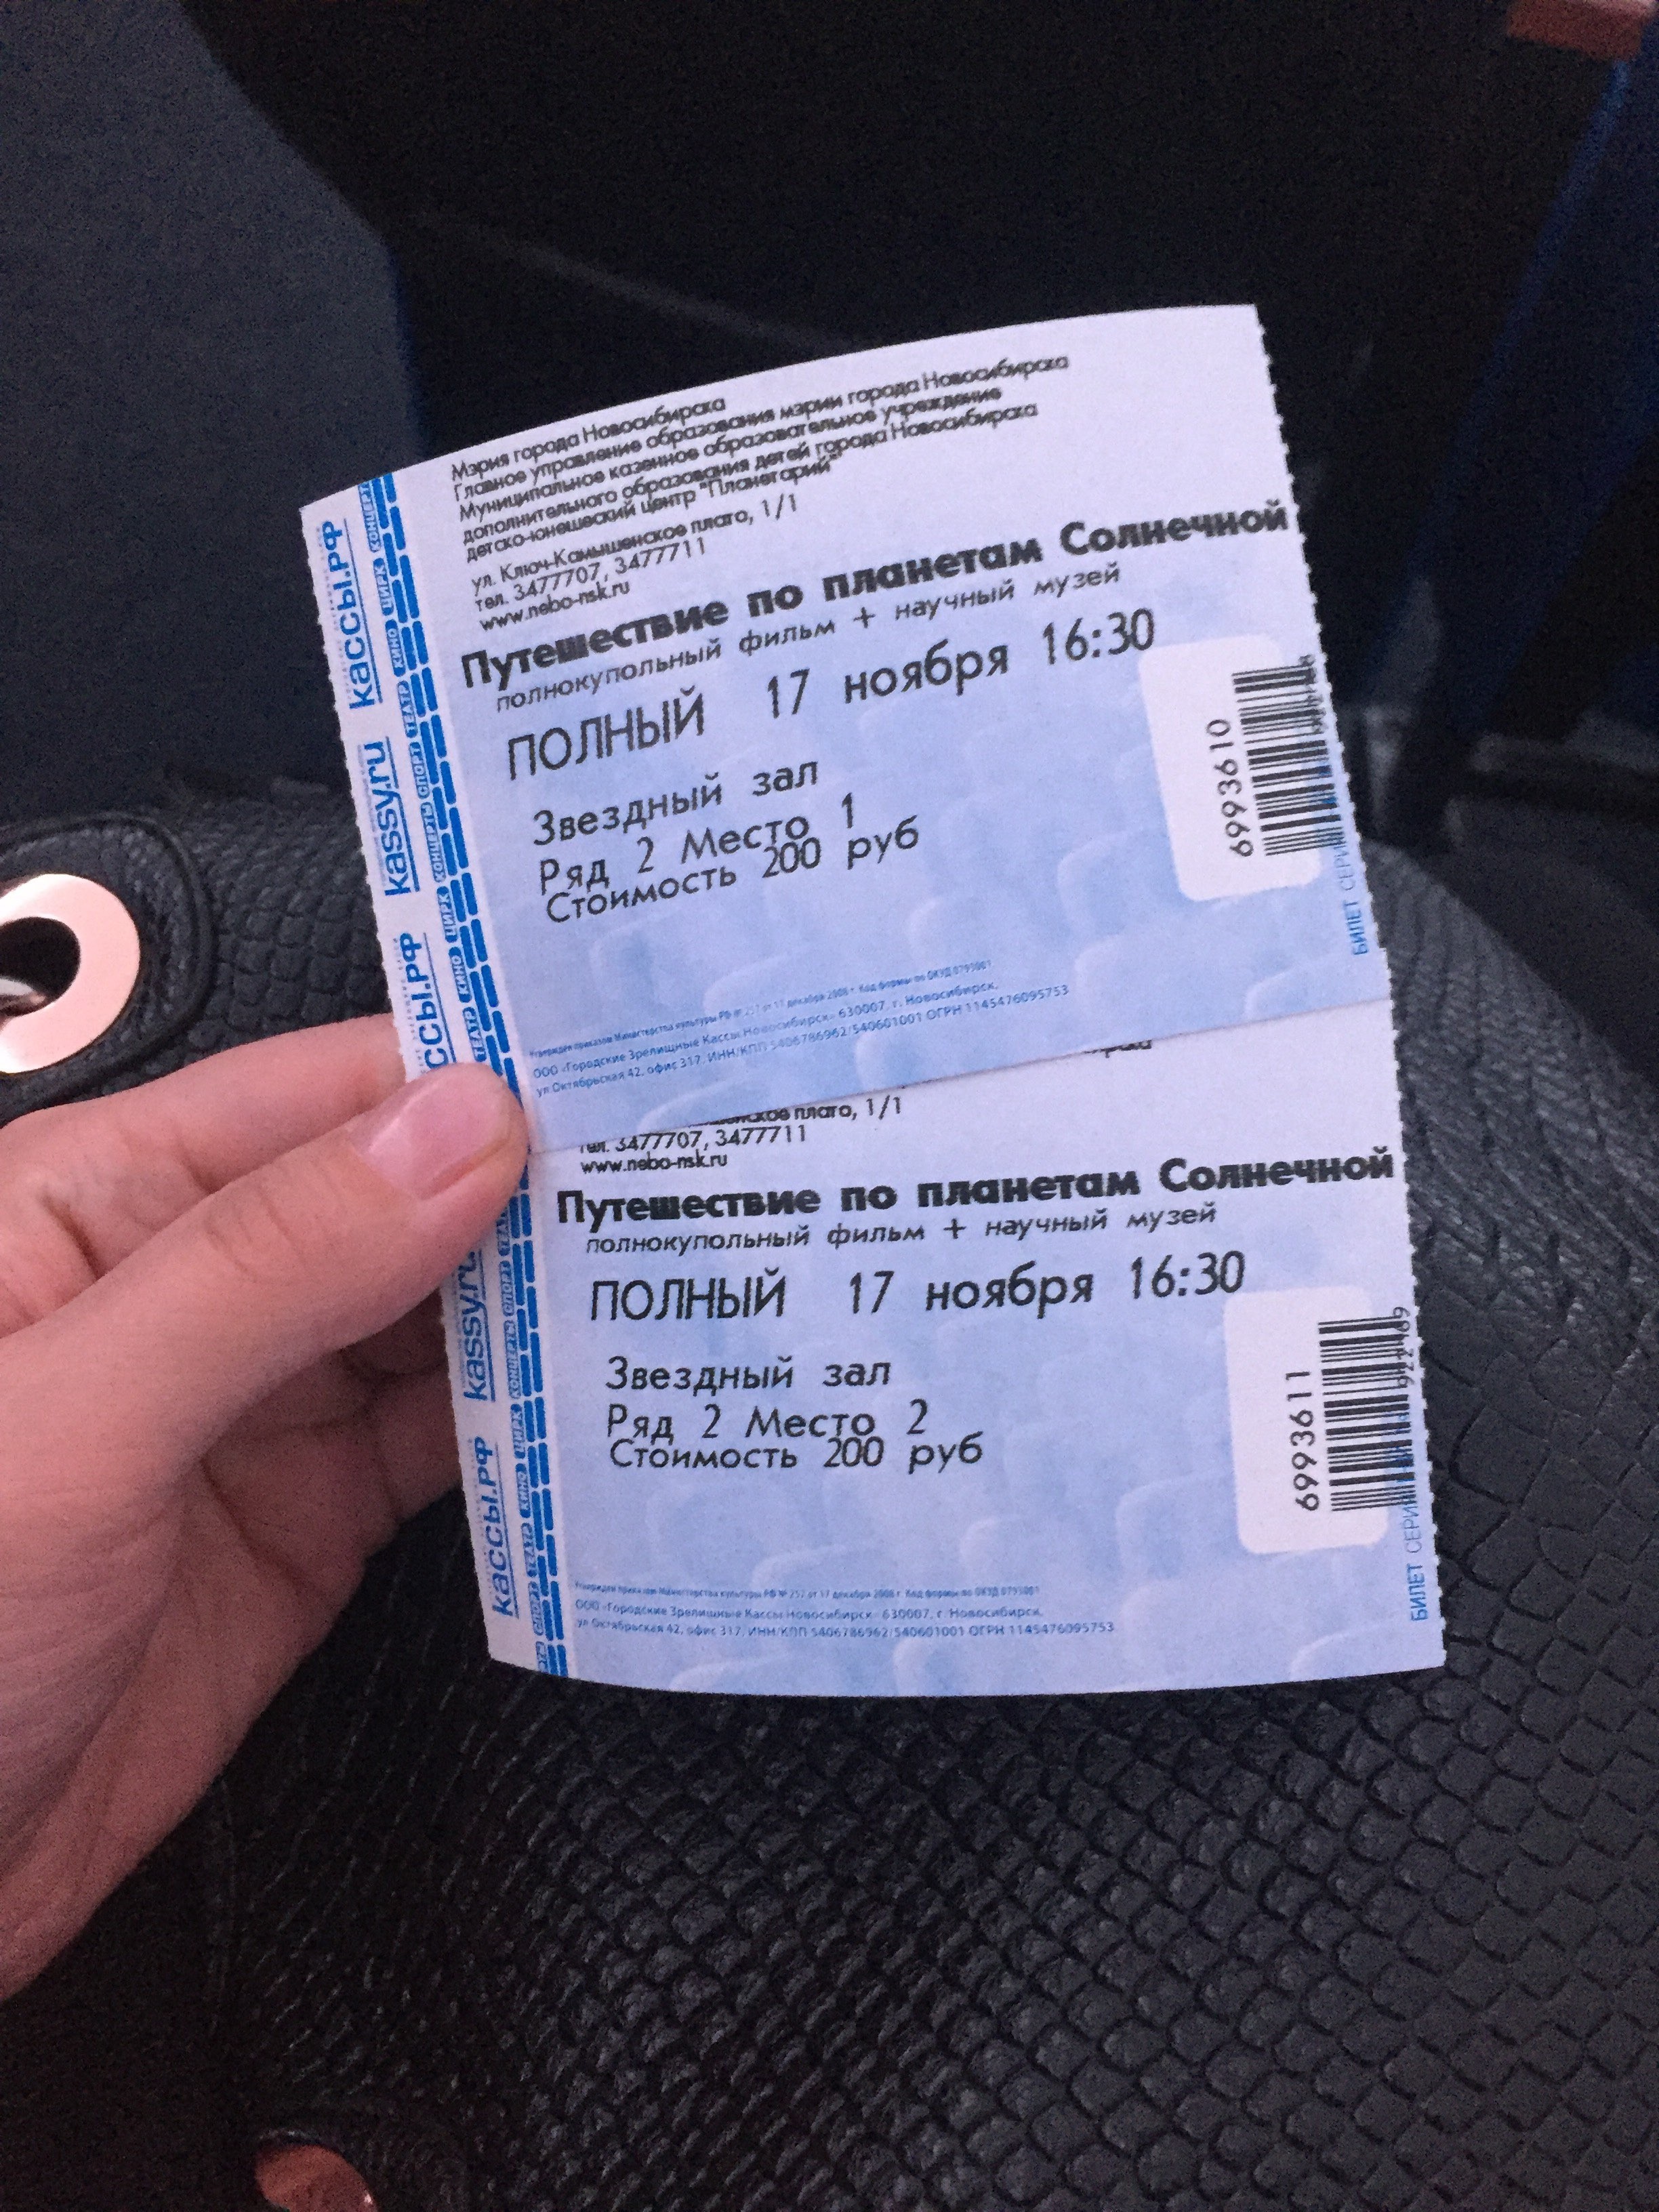 Новосибирск планетарий расписание цена билета